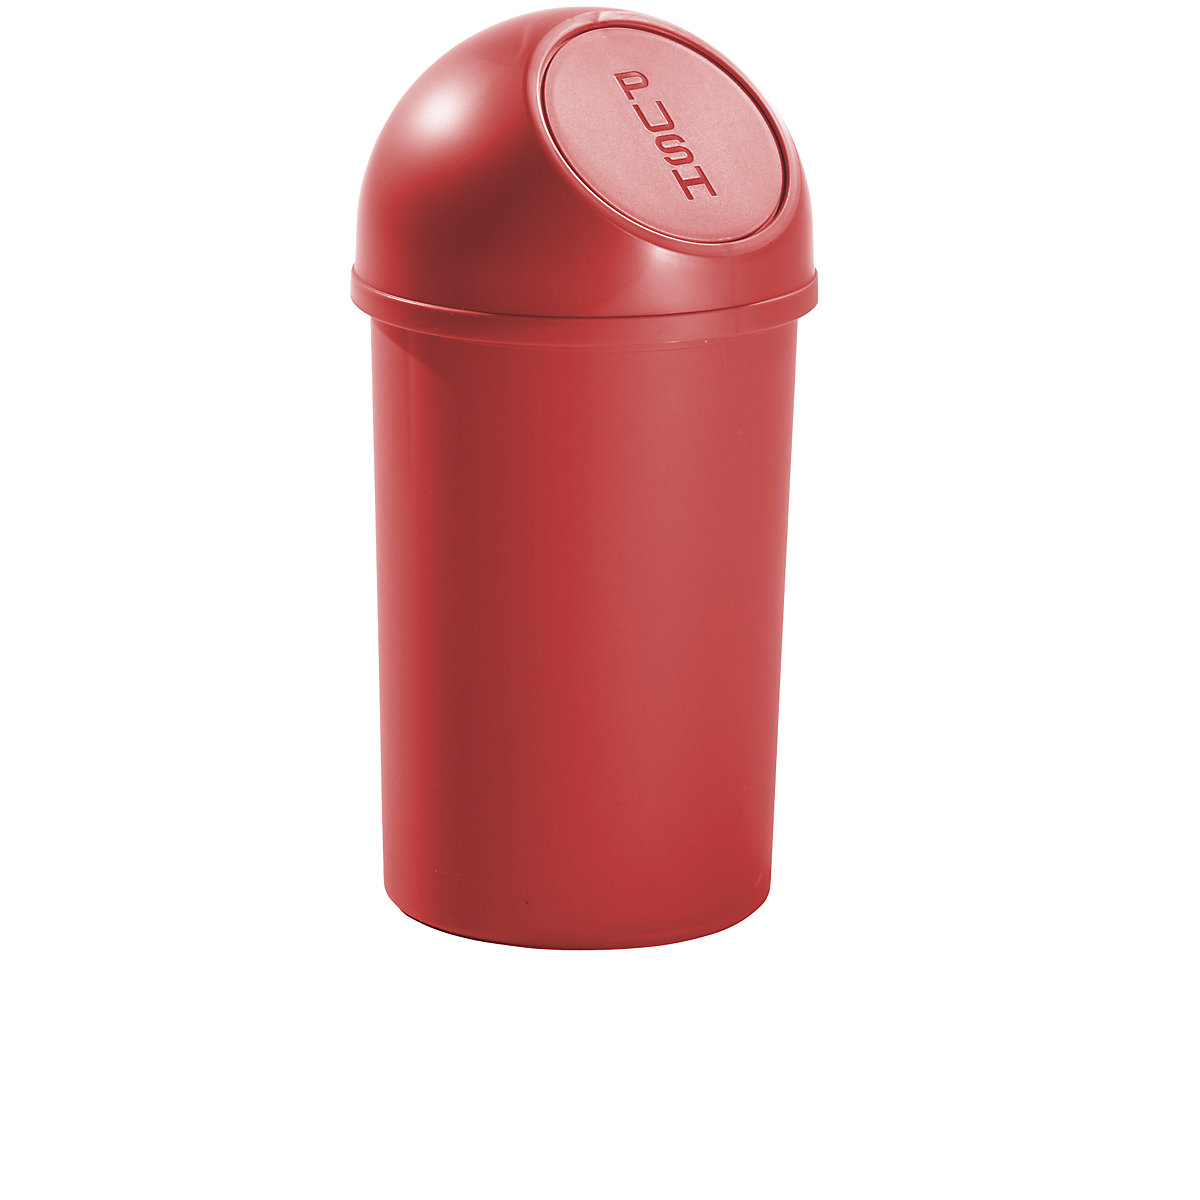 helit – Coș de gunoi cu capac basculant din plastic